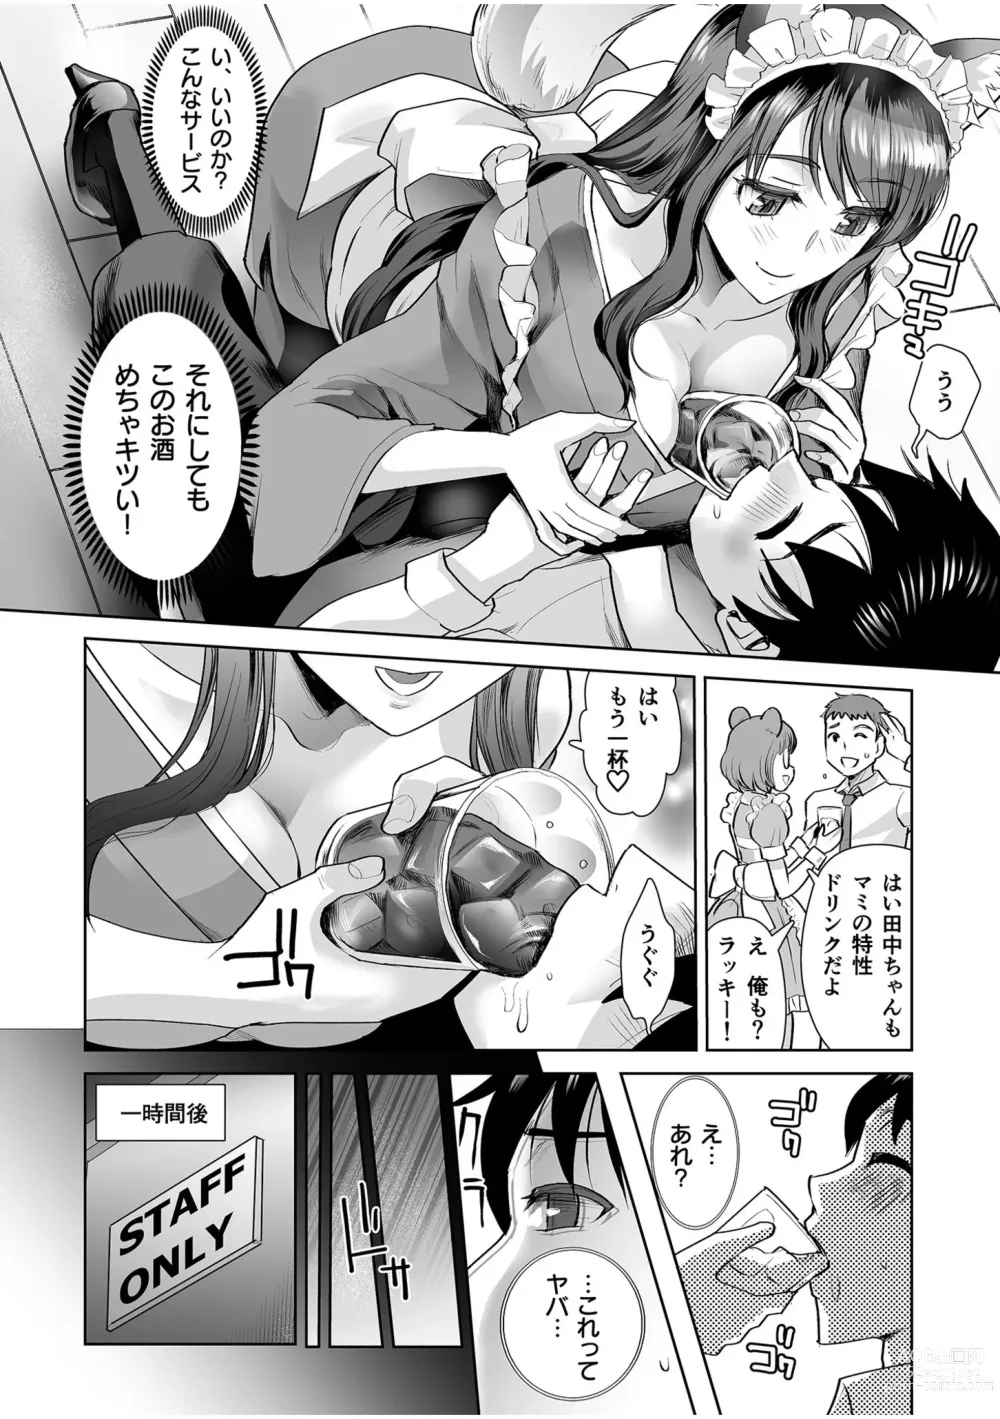 Page 8 of manga Erotic Maid Mimi Japan